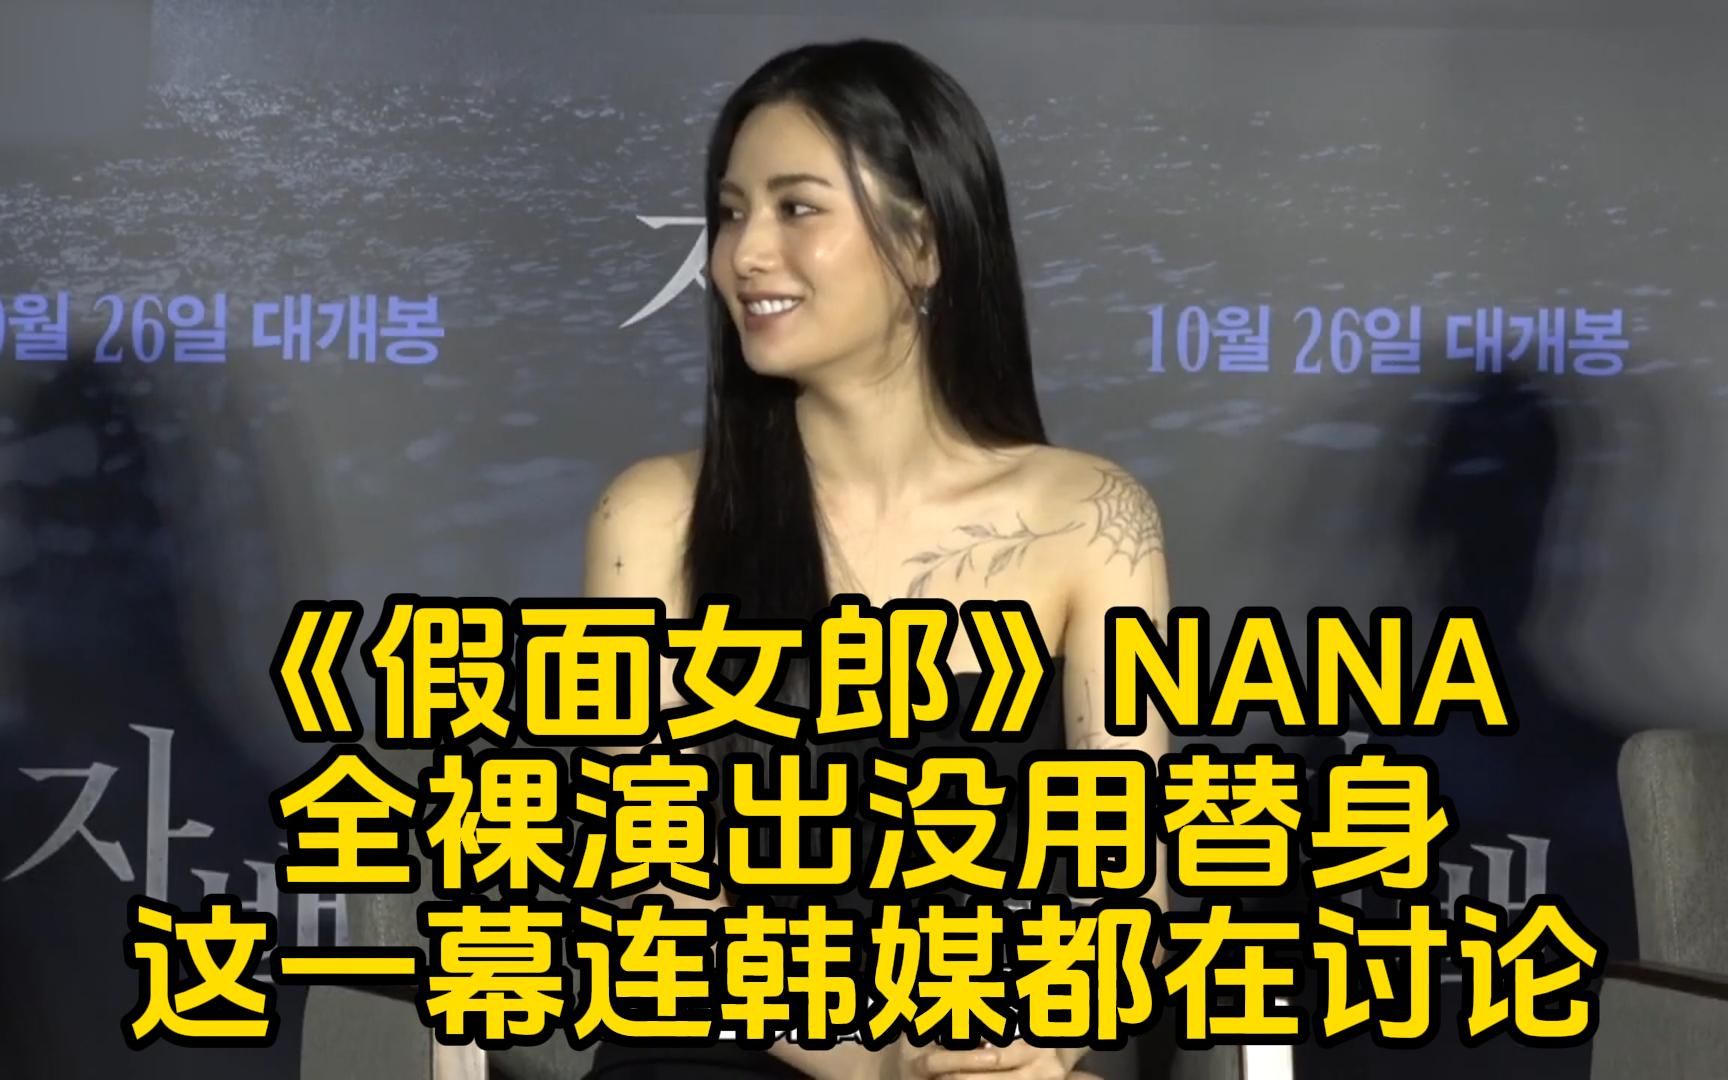 《假面女郎》NANA林珍娜全裸演出没用替身「令人震惊的这幕」连韩媒都在讨论